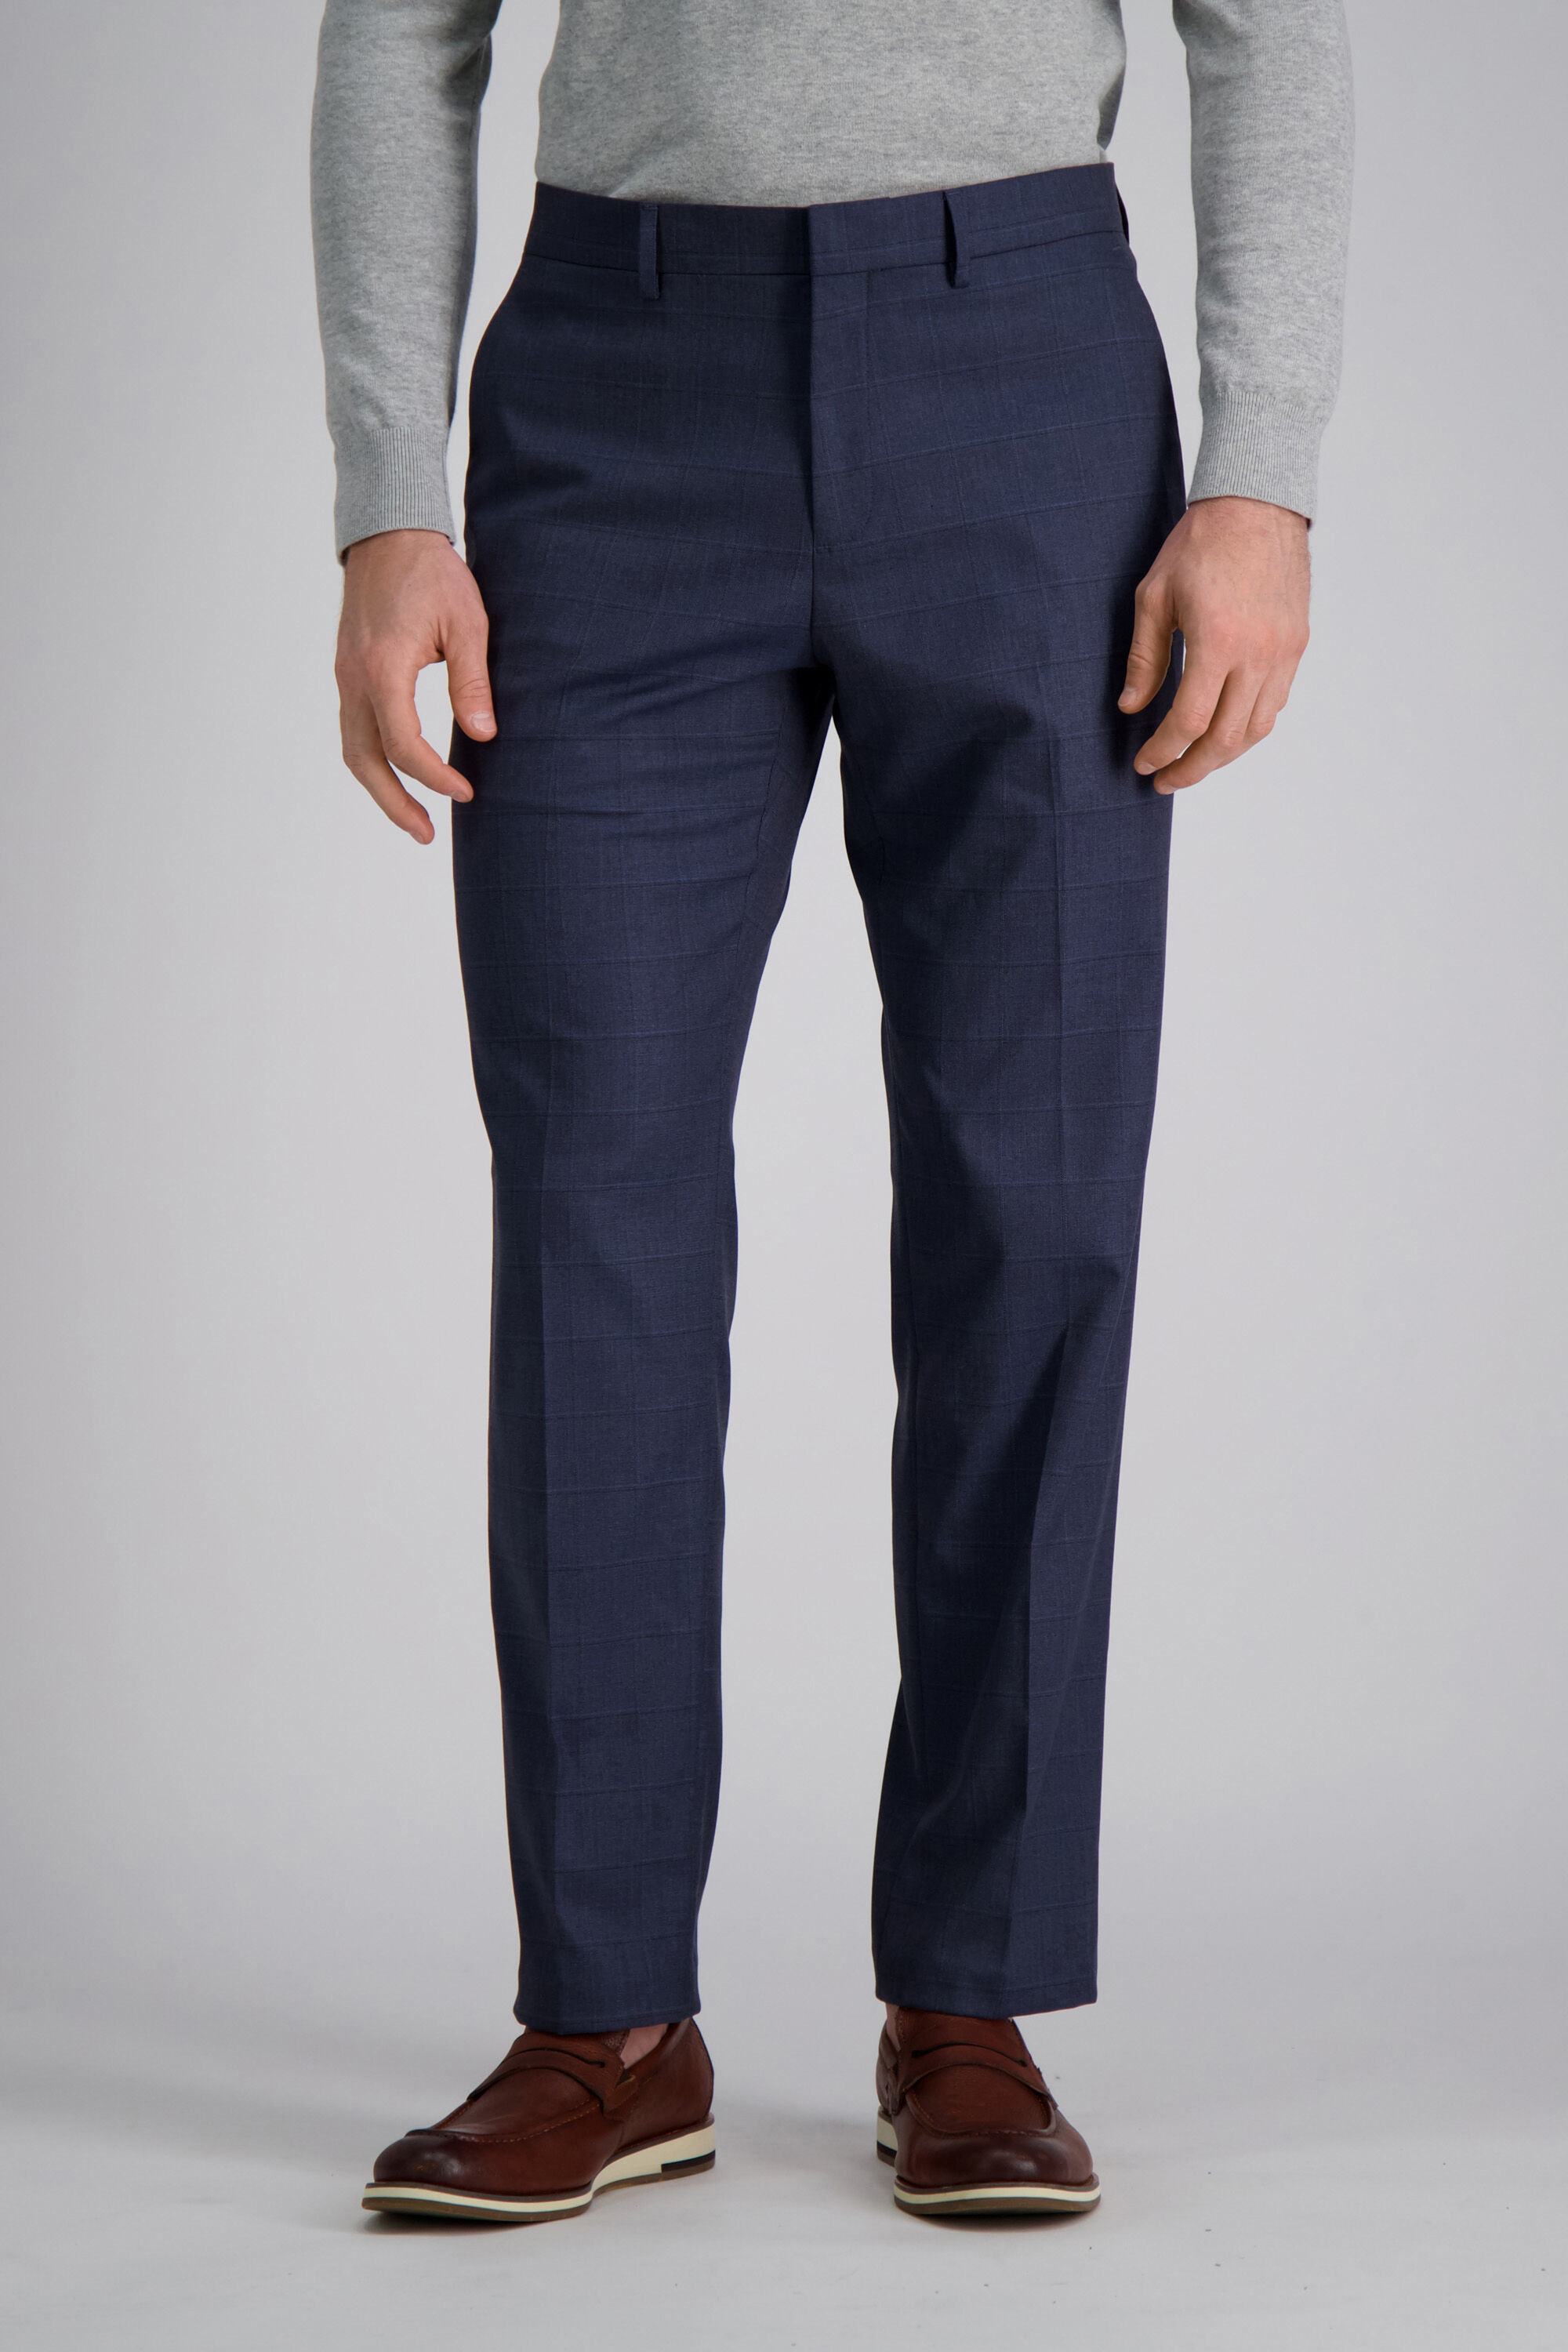 Navy blue wool suit pants | The Kooples